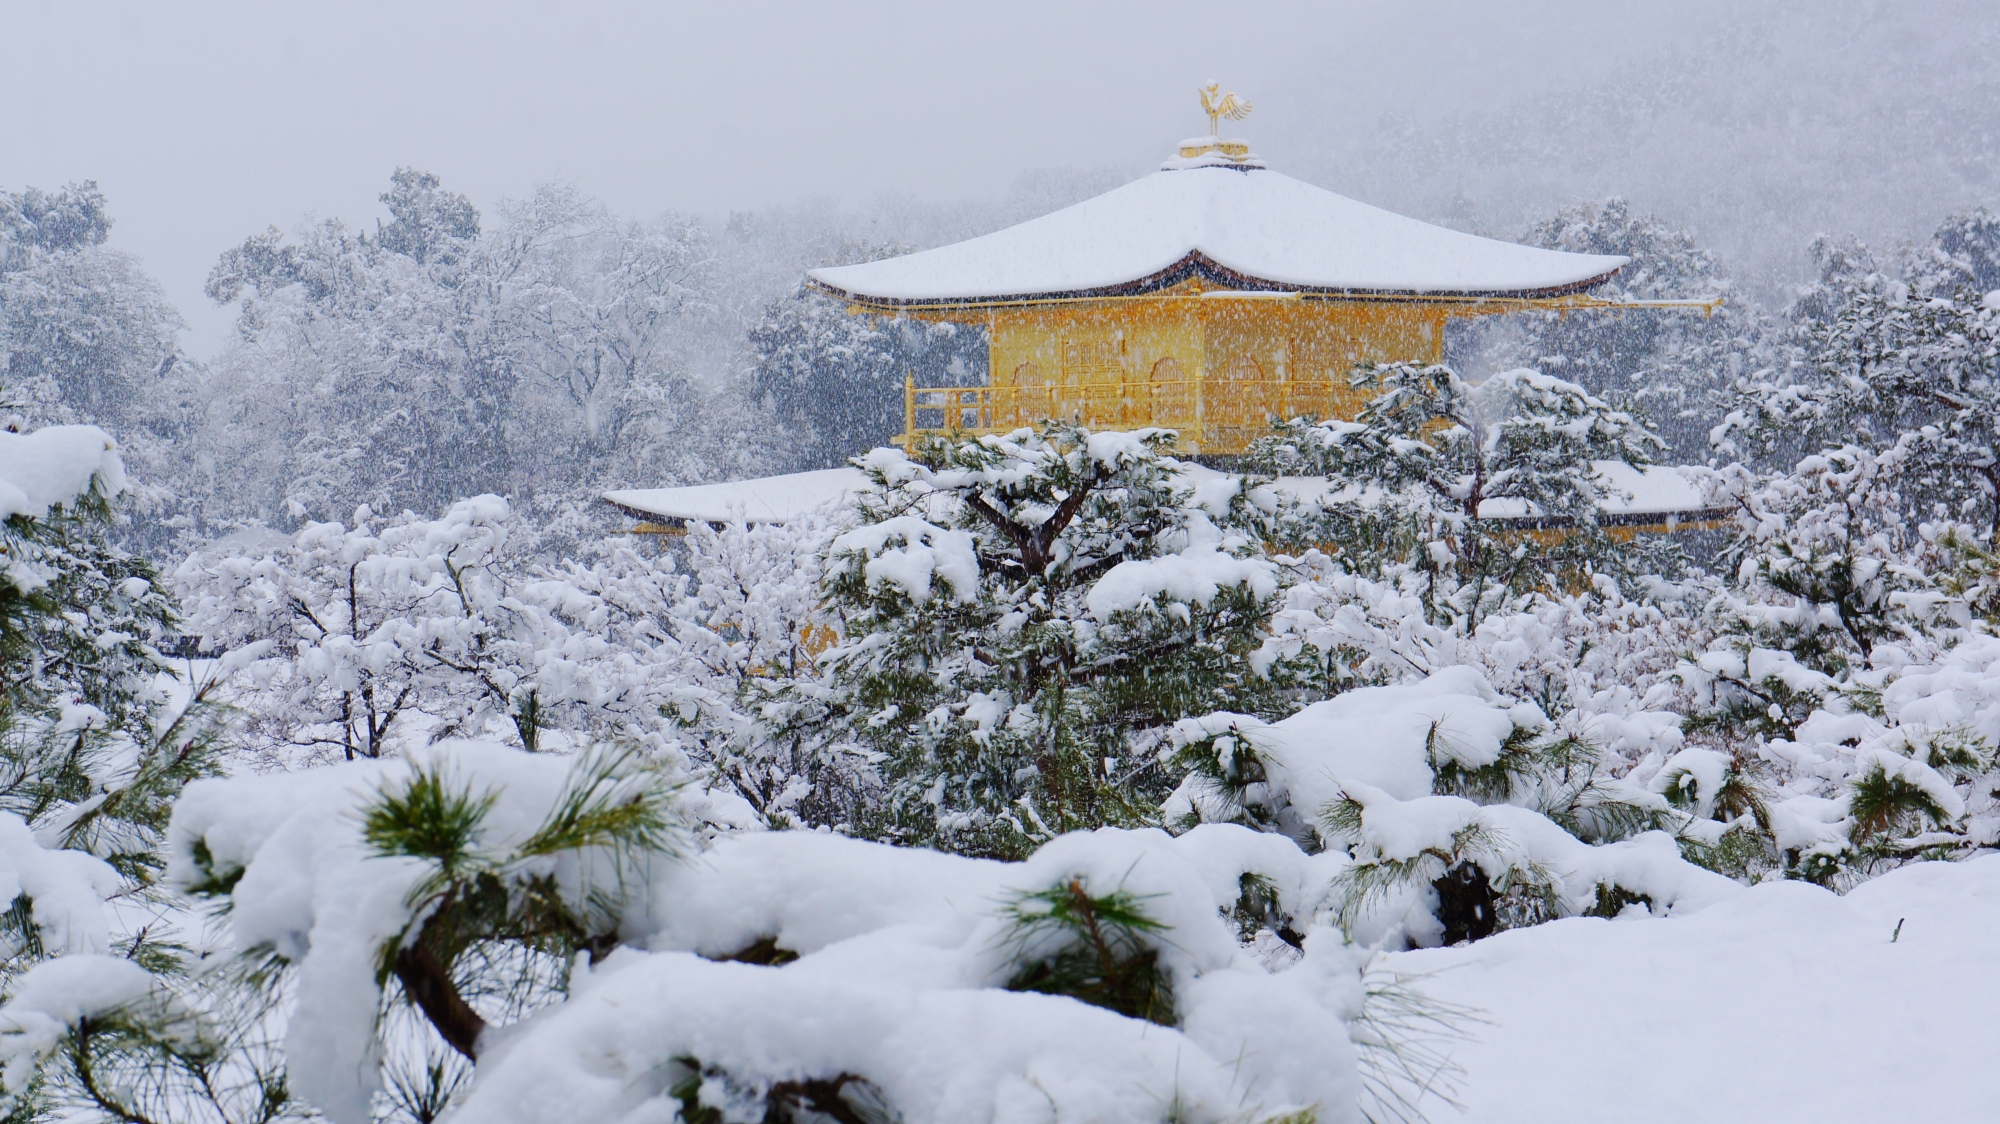 上から眺めた金閣寺の雪景色